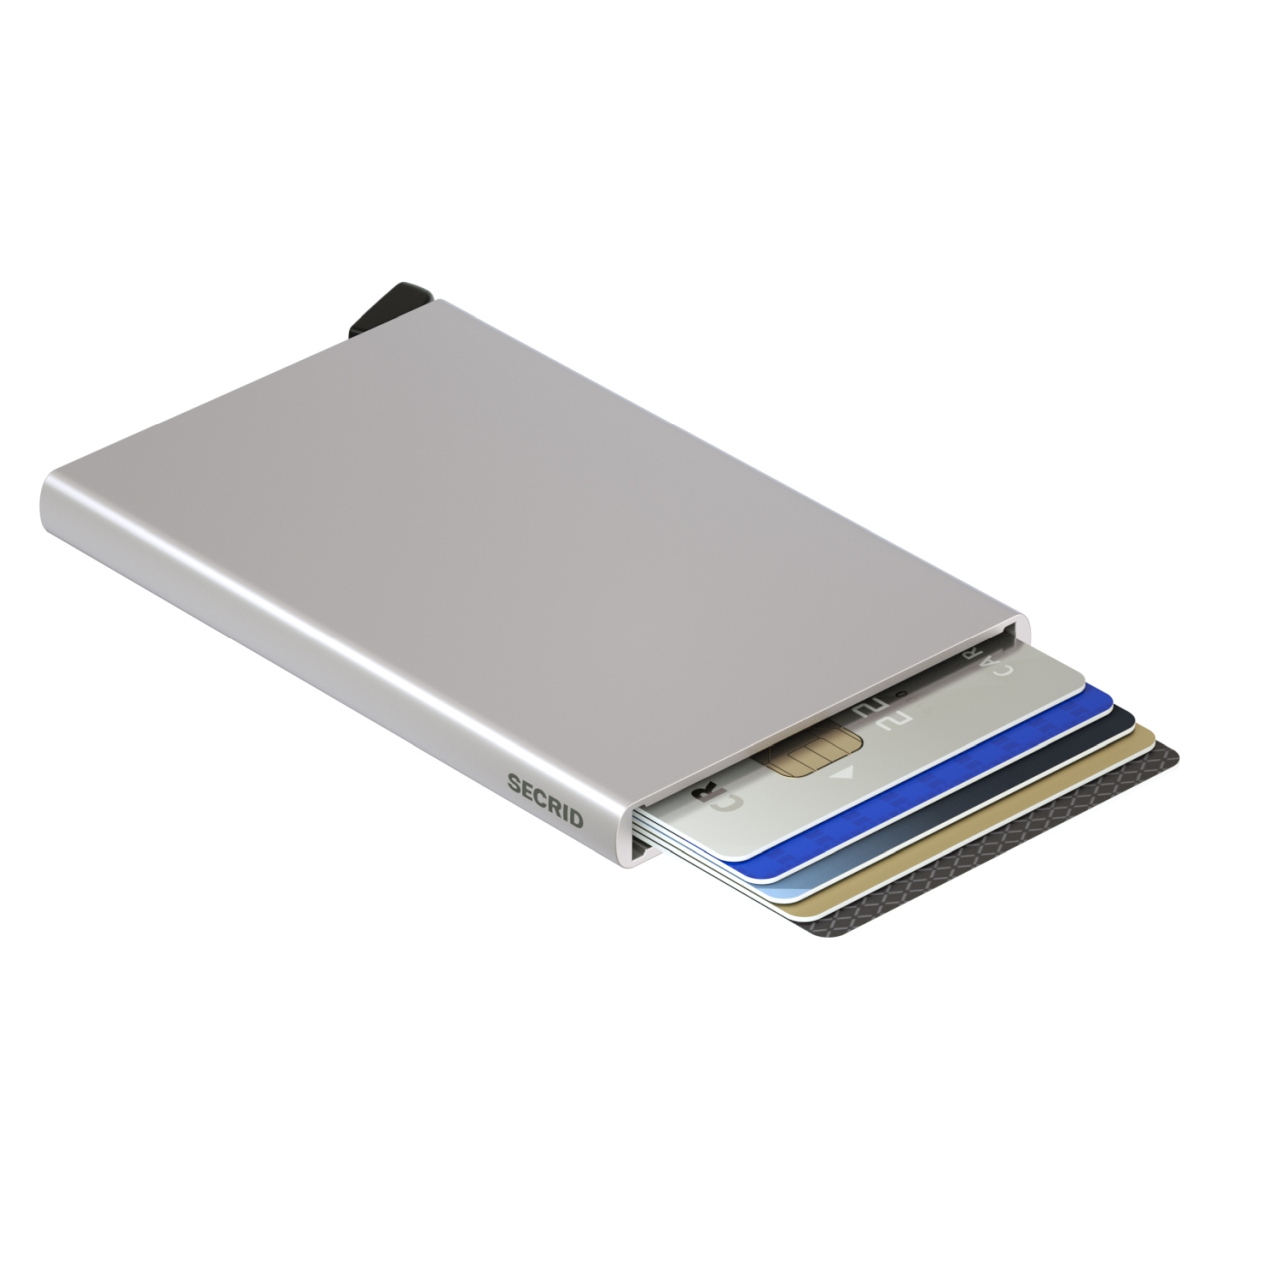 Secrid Cardprotector C-Silver